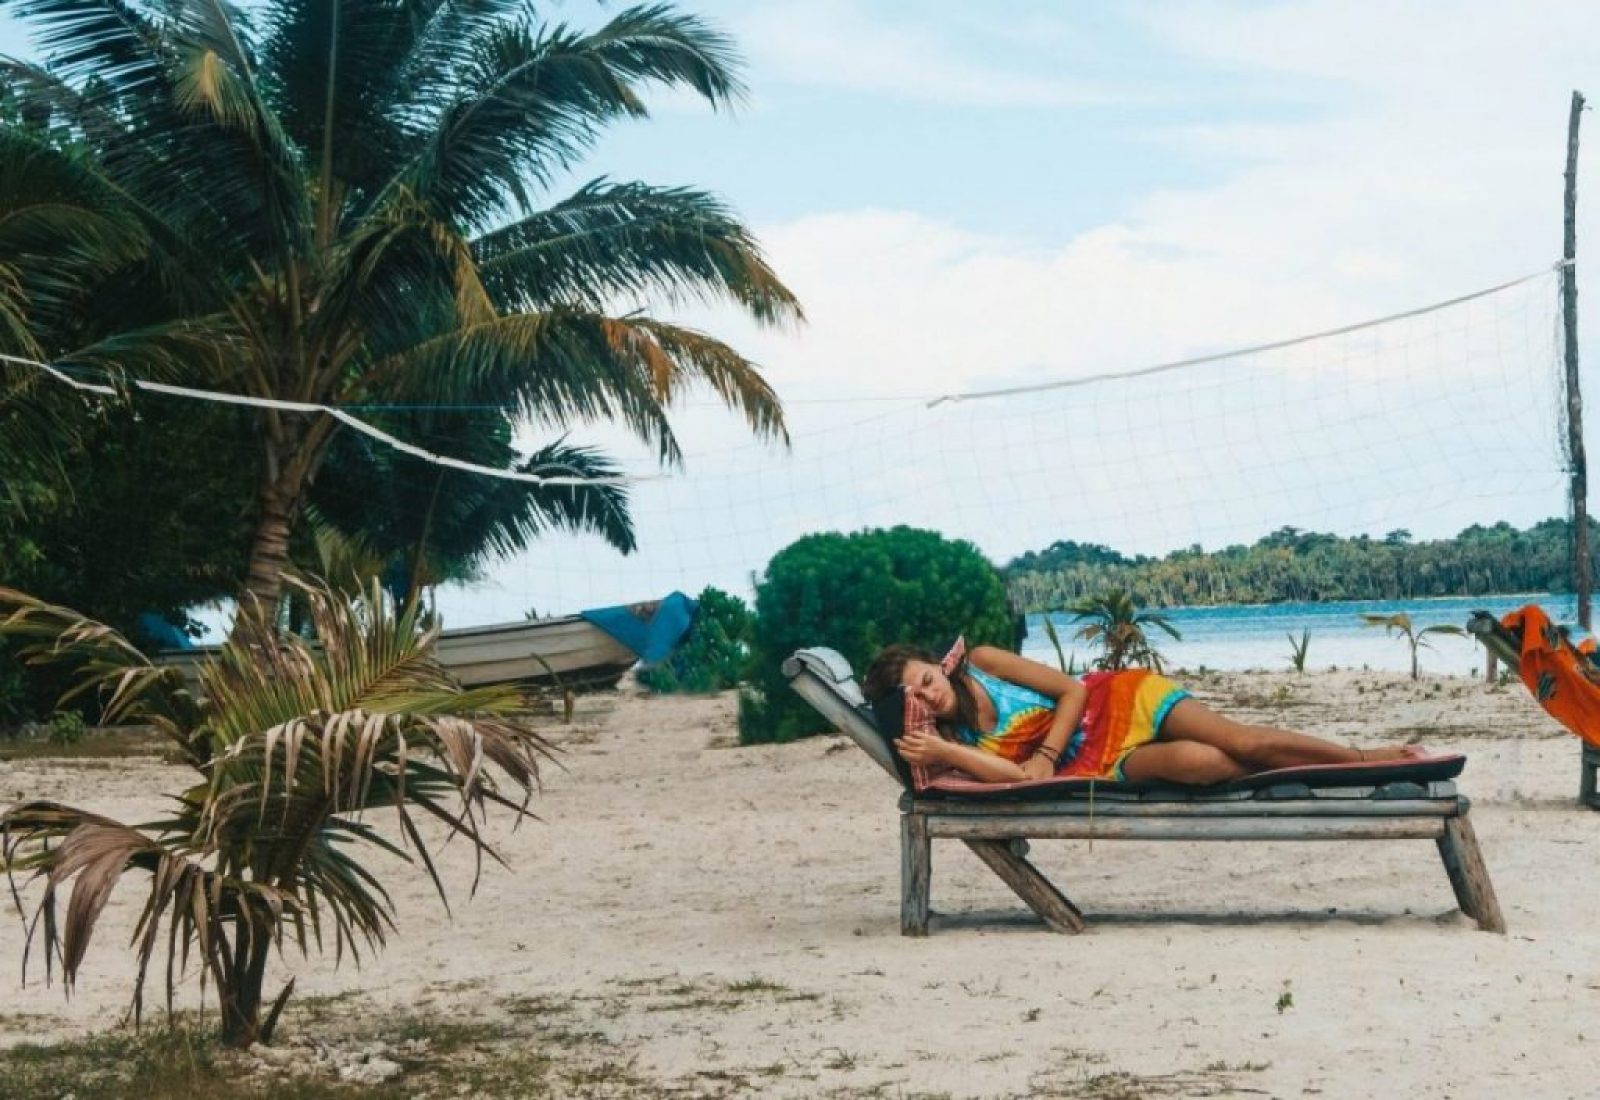 A girl sleeping on a deck chair on the beach